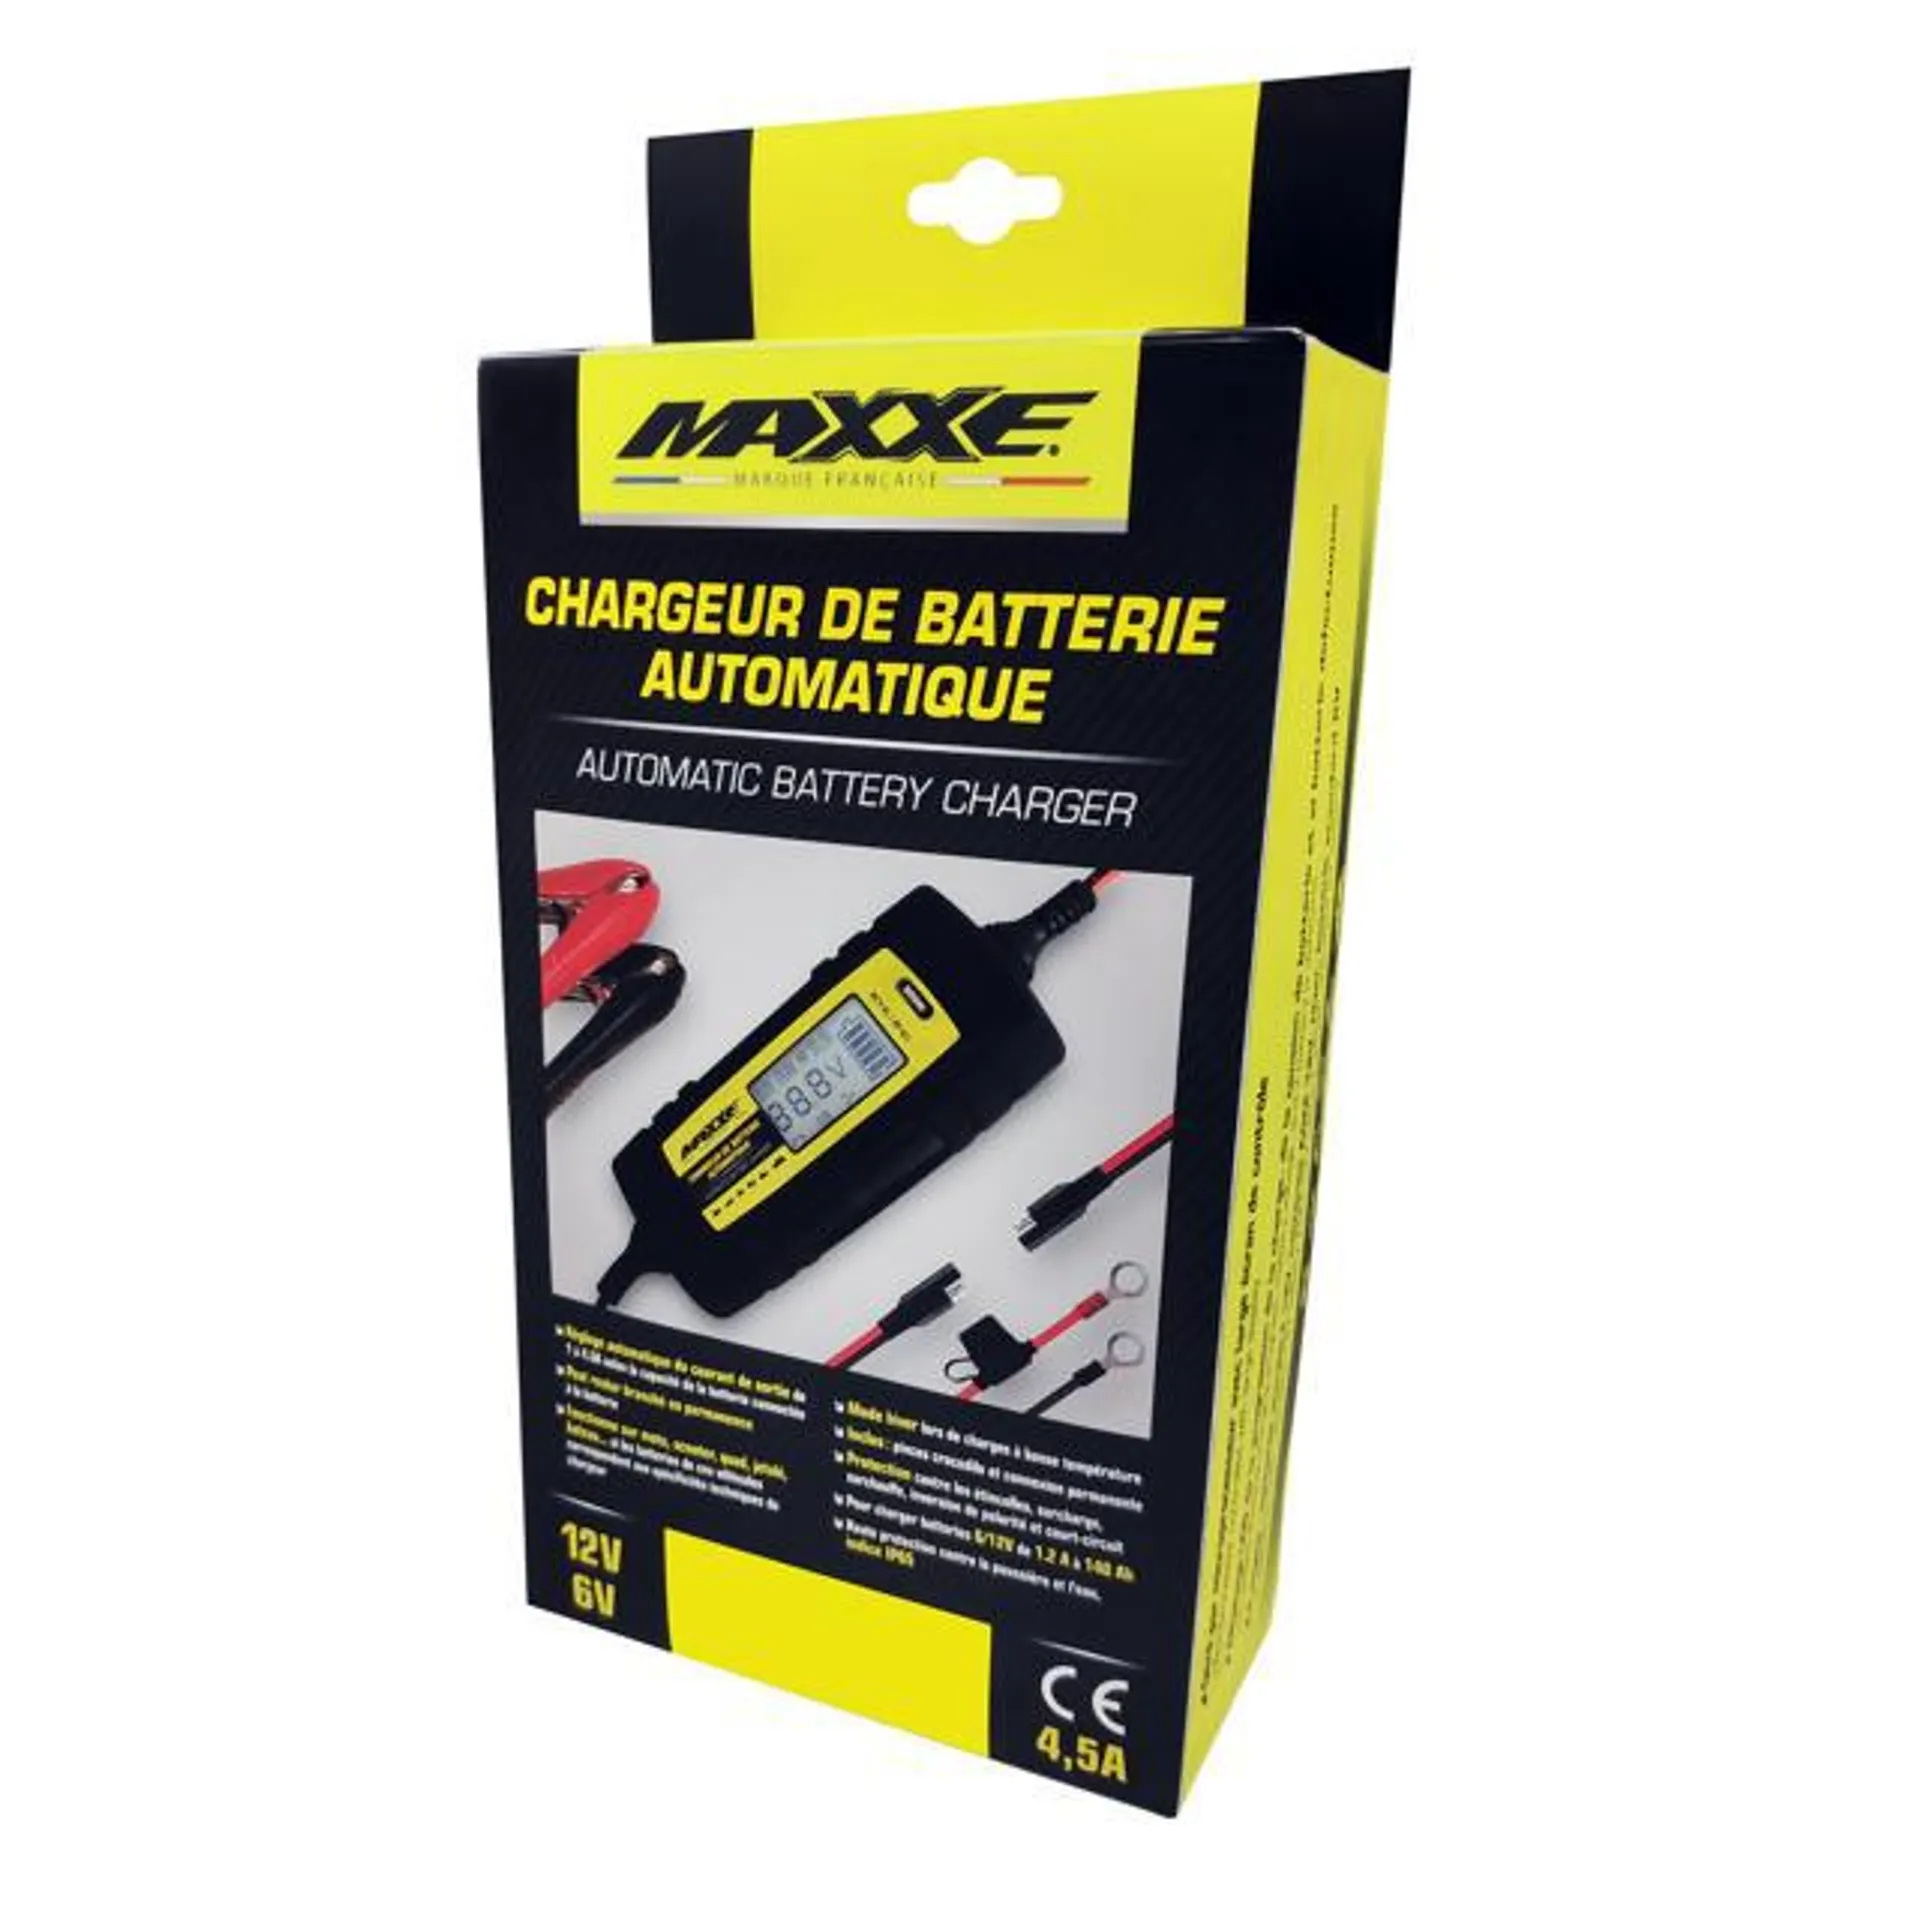 MAXXE Chargeur De Batterie Automatique 6-12V / 1A-4,5A